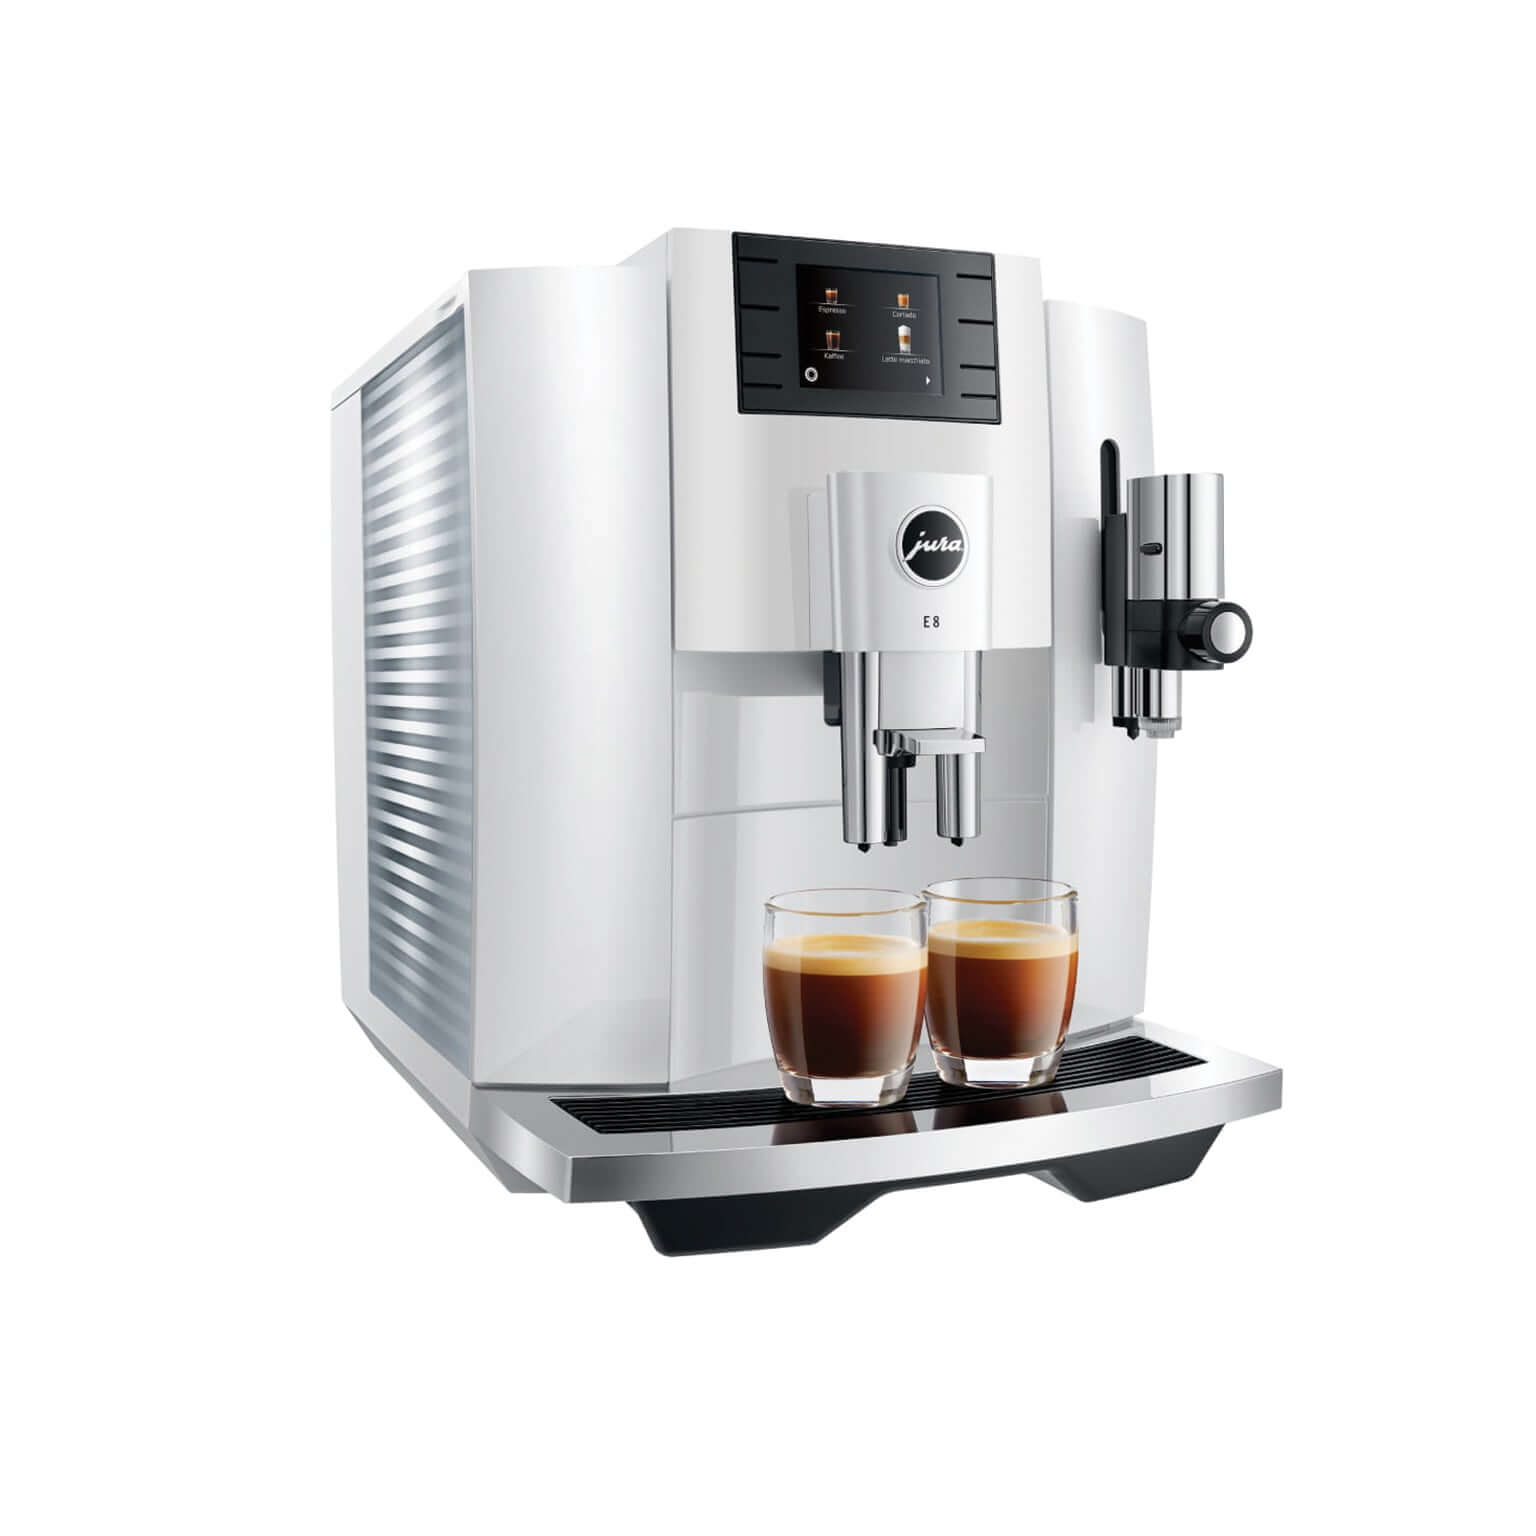 Jura Espresso Machine - E8